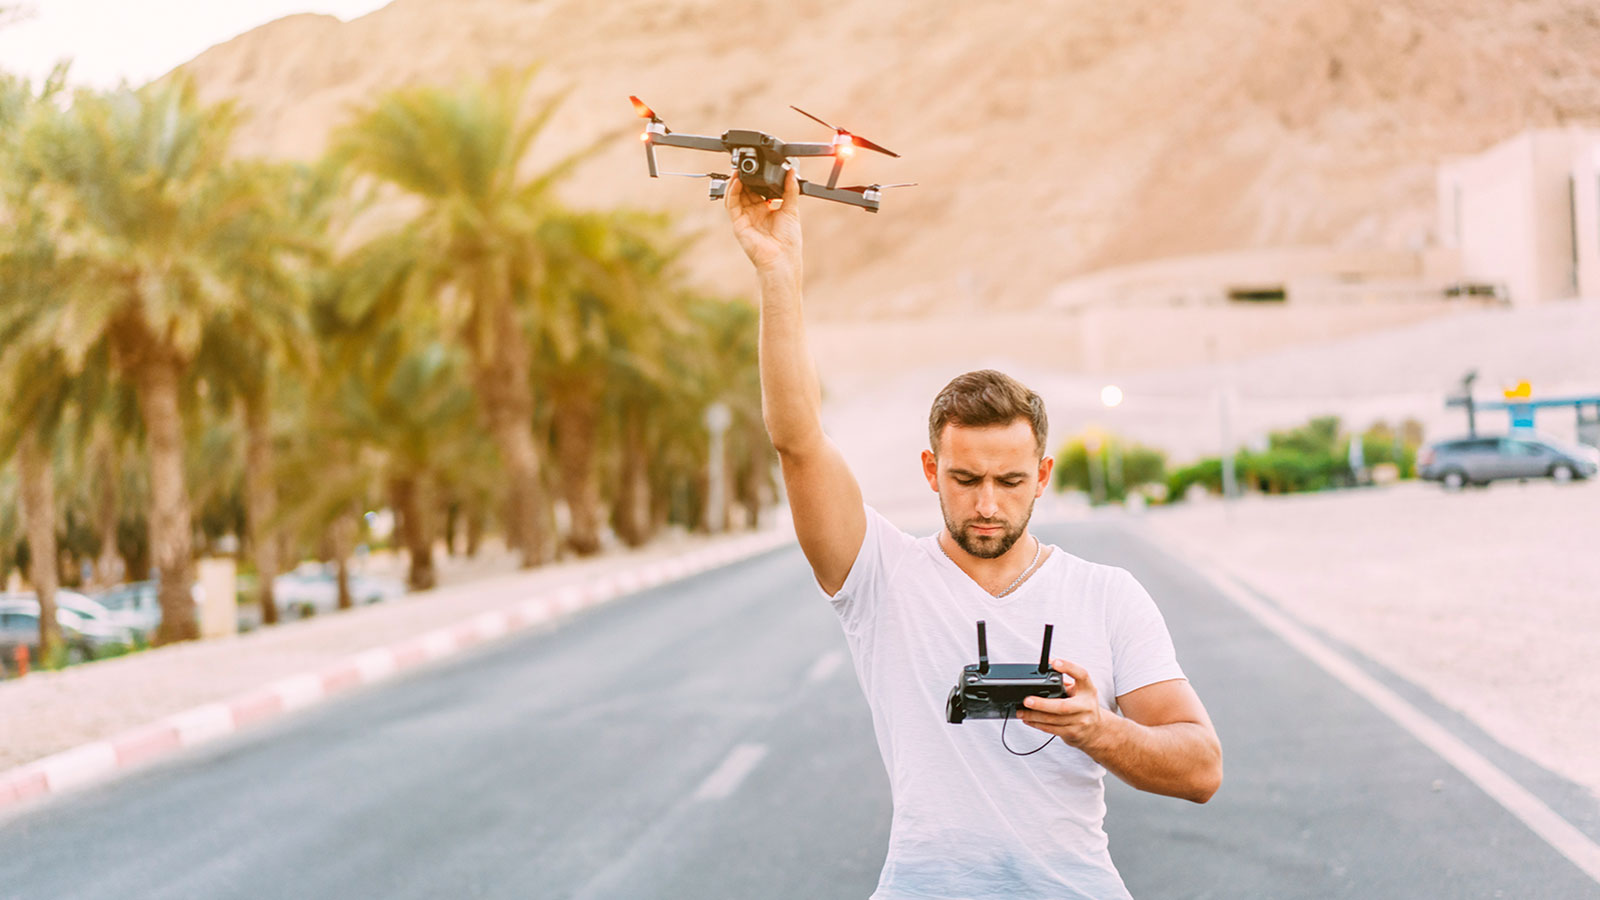 Drone de controle remoto: 5 dicas para quem é iniciante